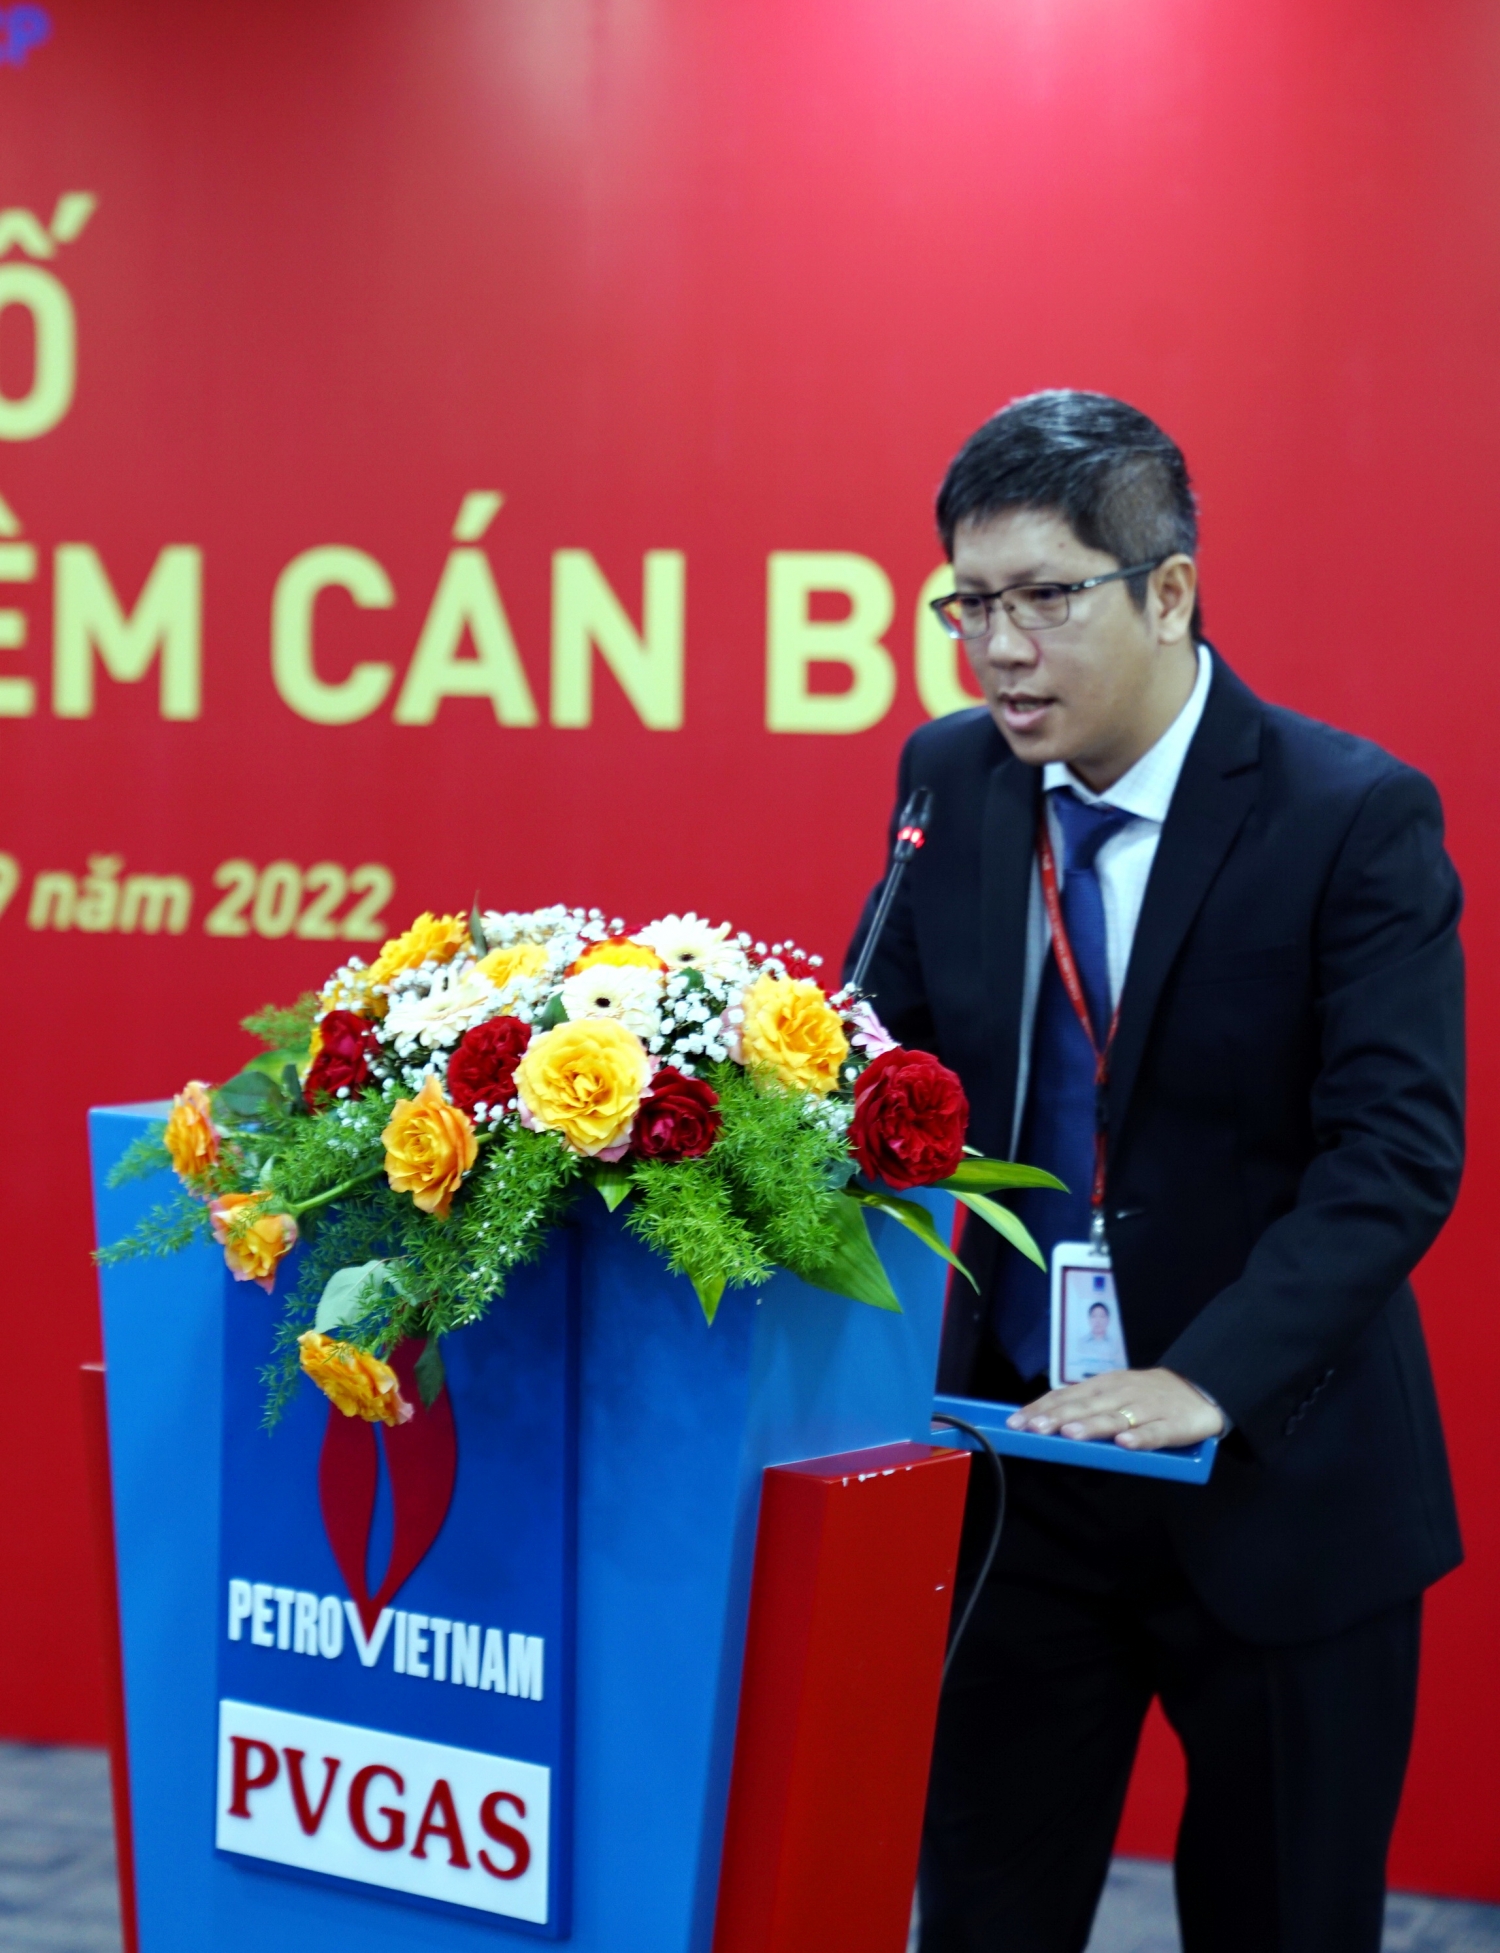 Đồng chí Lã Thanh Hùng phát biểu nhận nhiệm vụ ở cương vị mới